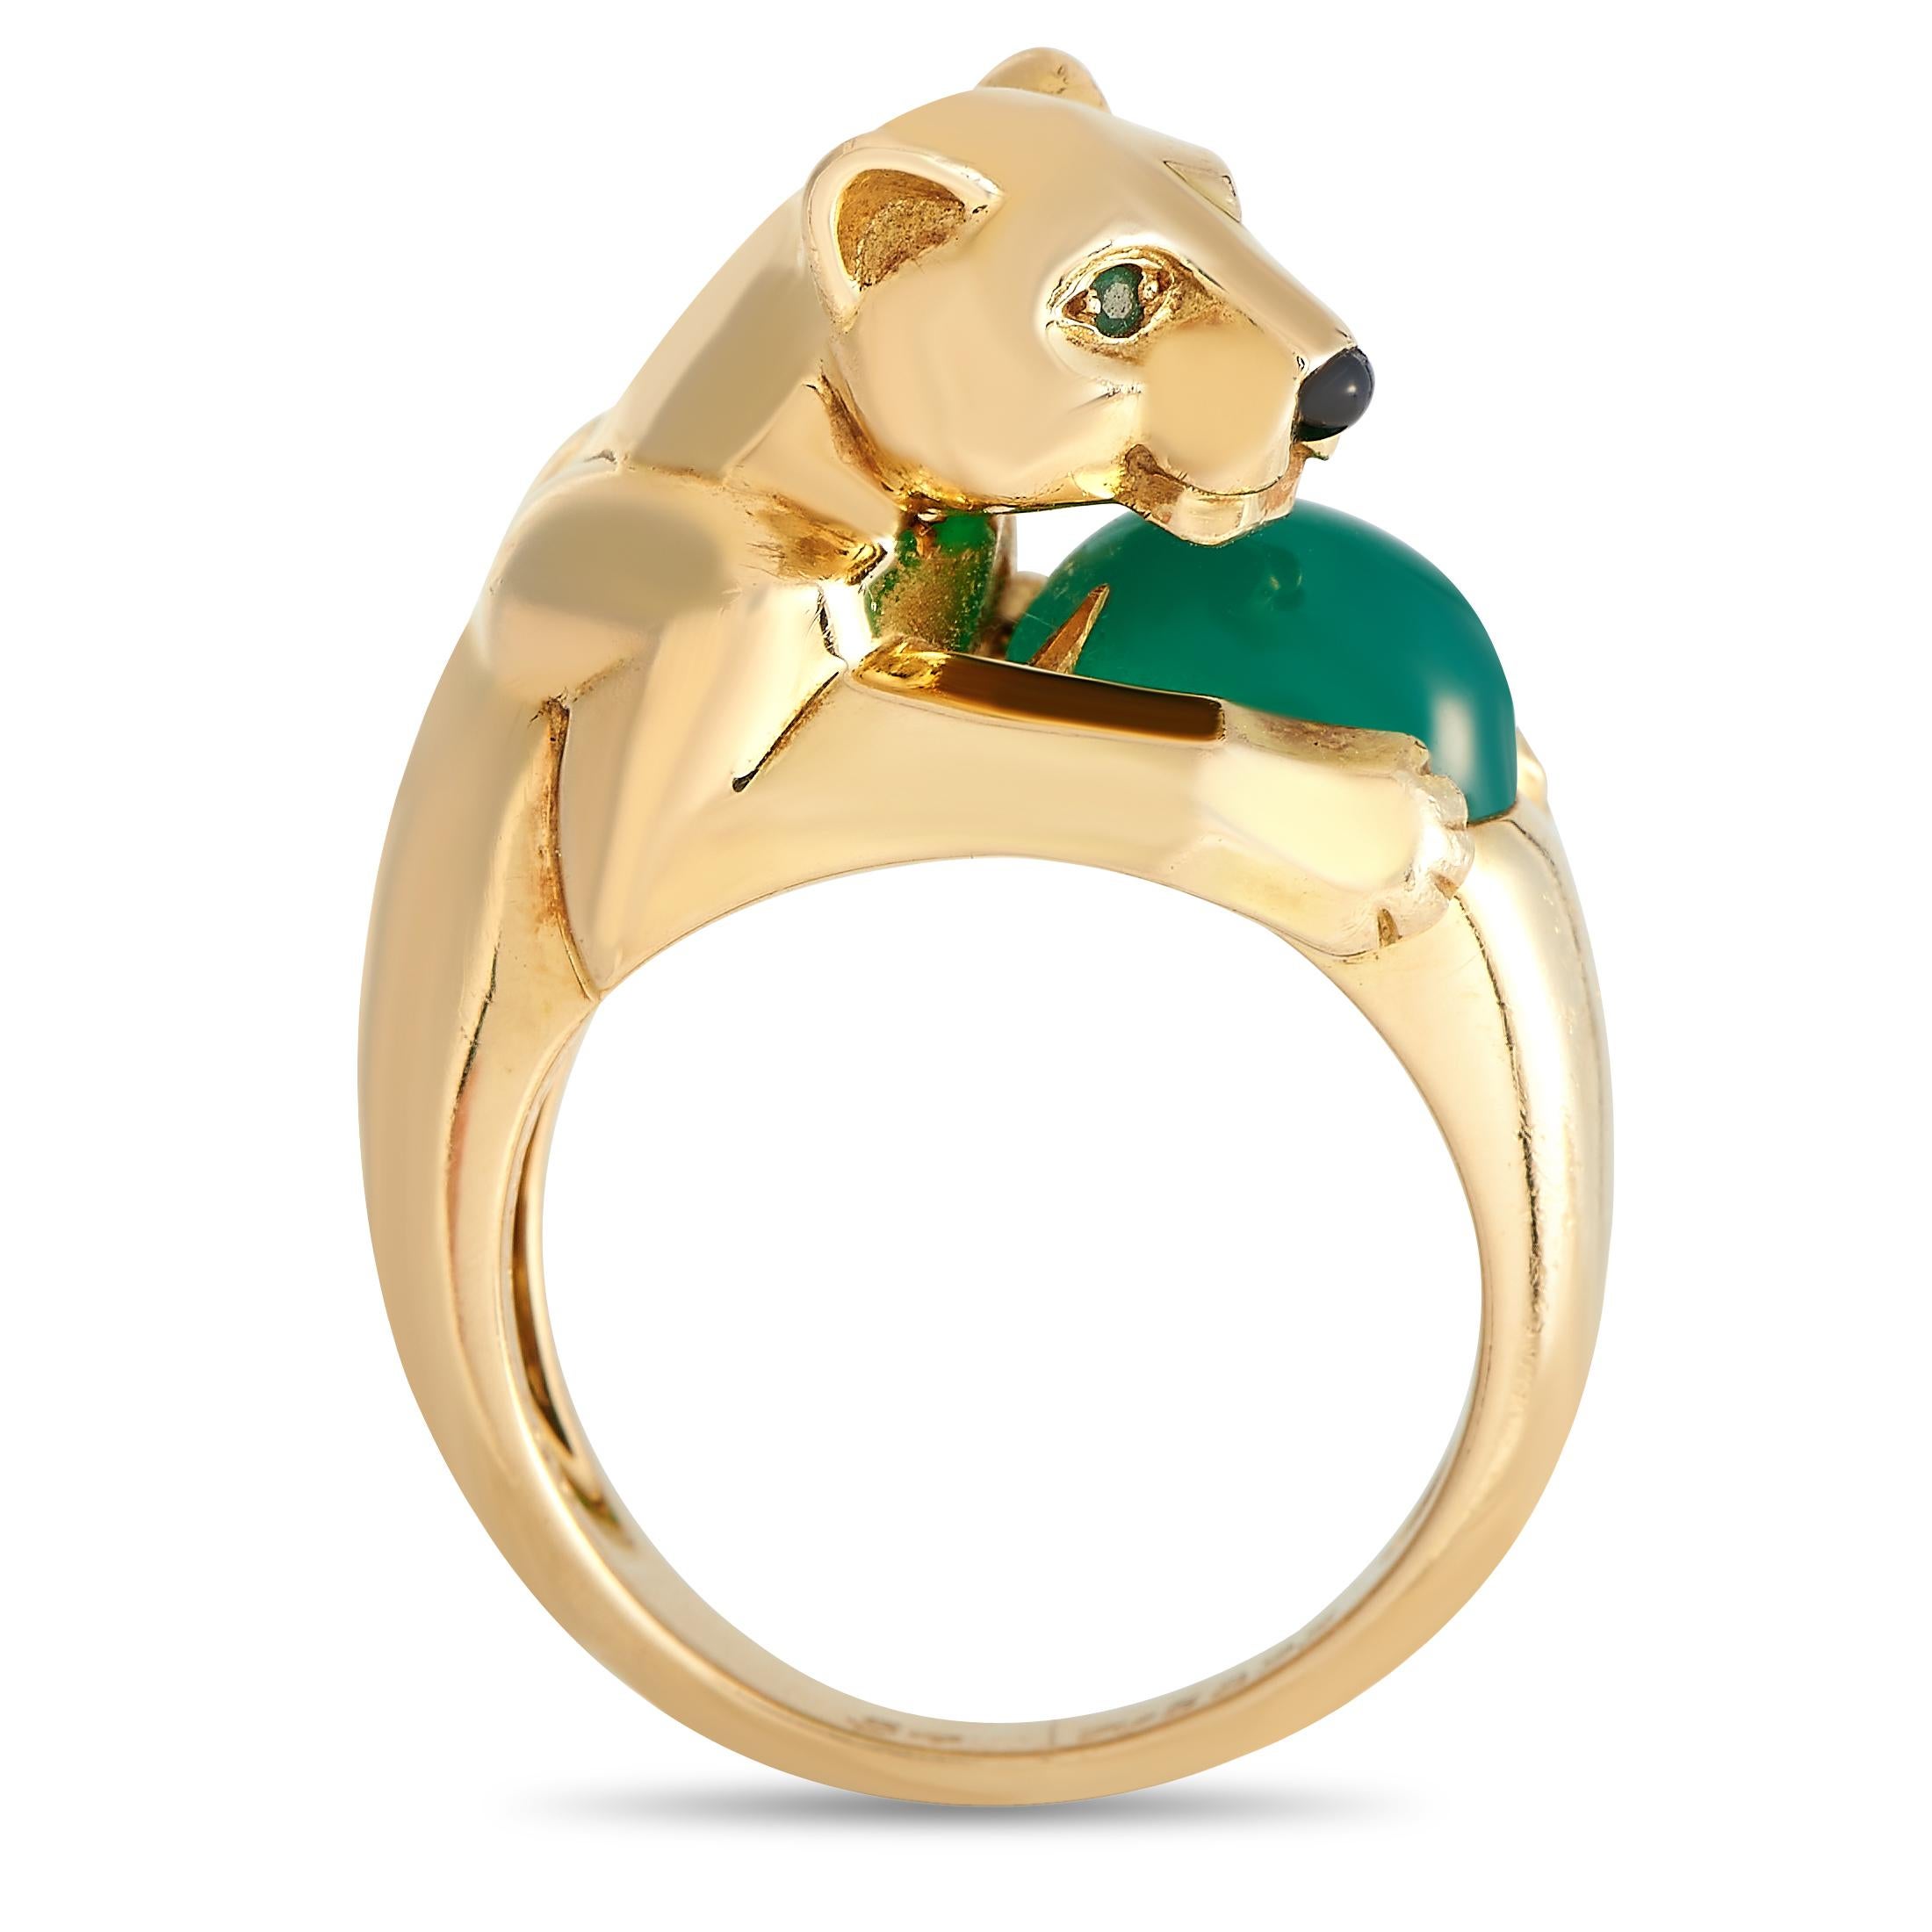 Dieser Ring von Cartier ist aus 18 Karat Gelbgold gefertigt und besticht durch sein raffiniertes Design. Das Band zeigt einen skulptierten Panther mit Augen aus Chalcedon und einer Nase aus Onyx. Er umschließt einen ovalen Chalzedon-Cabochon, der